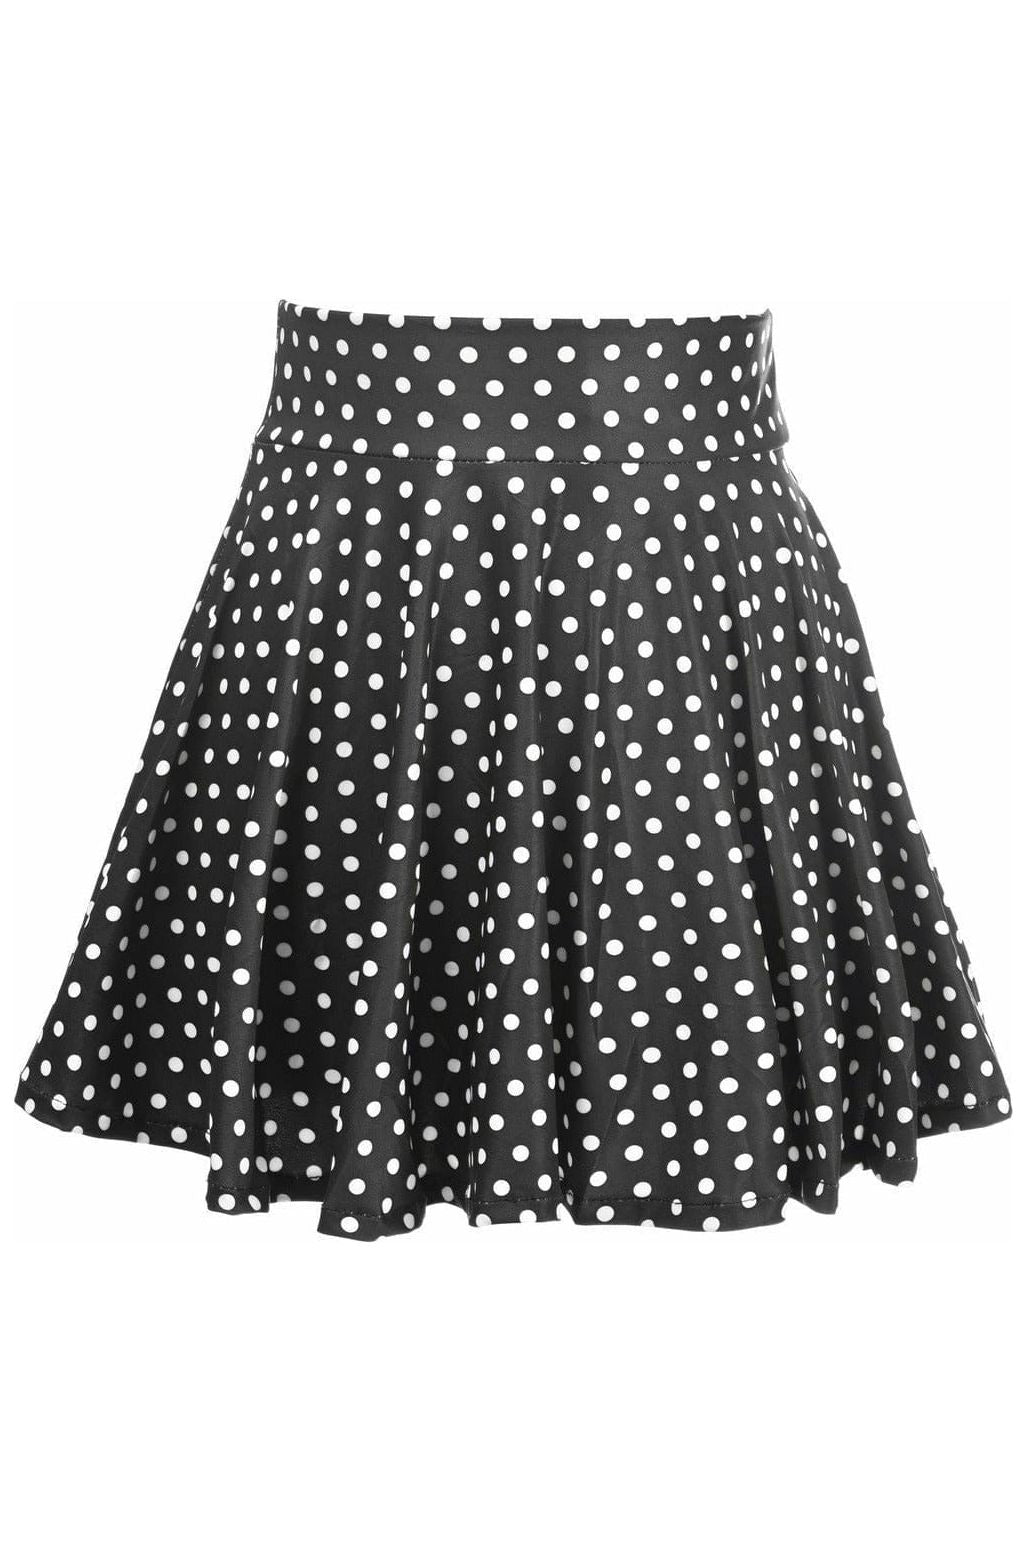 Daisy Corsets Polka Dot Stretch Lycra Skirt